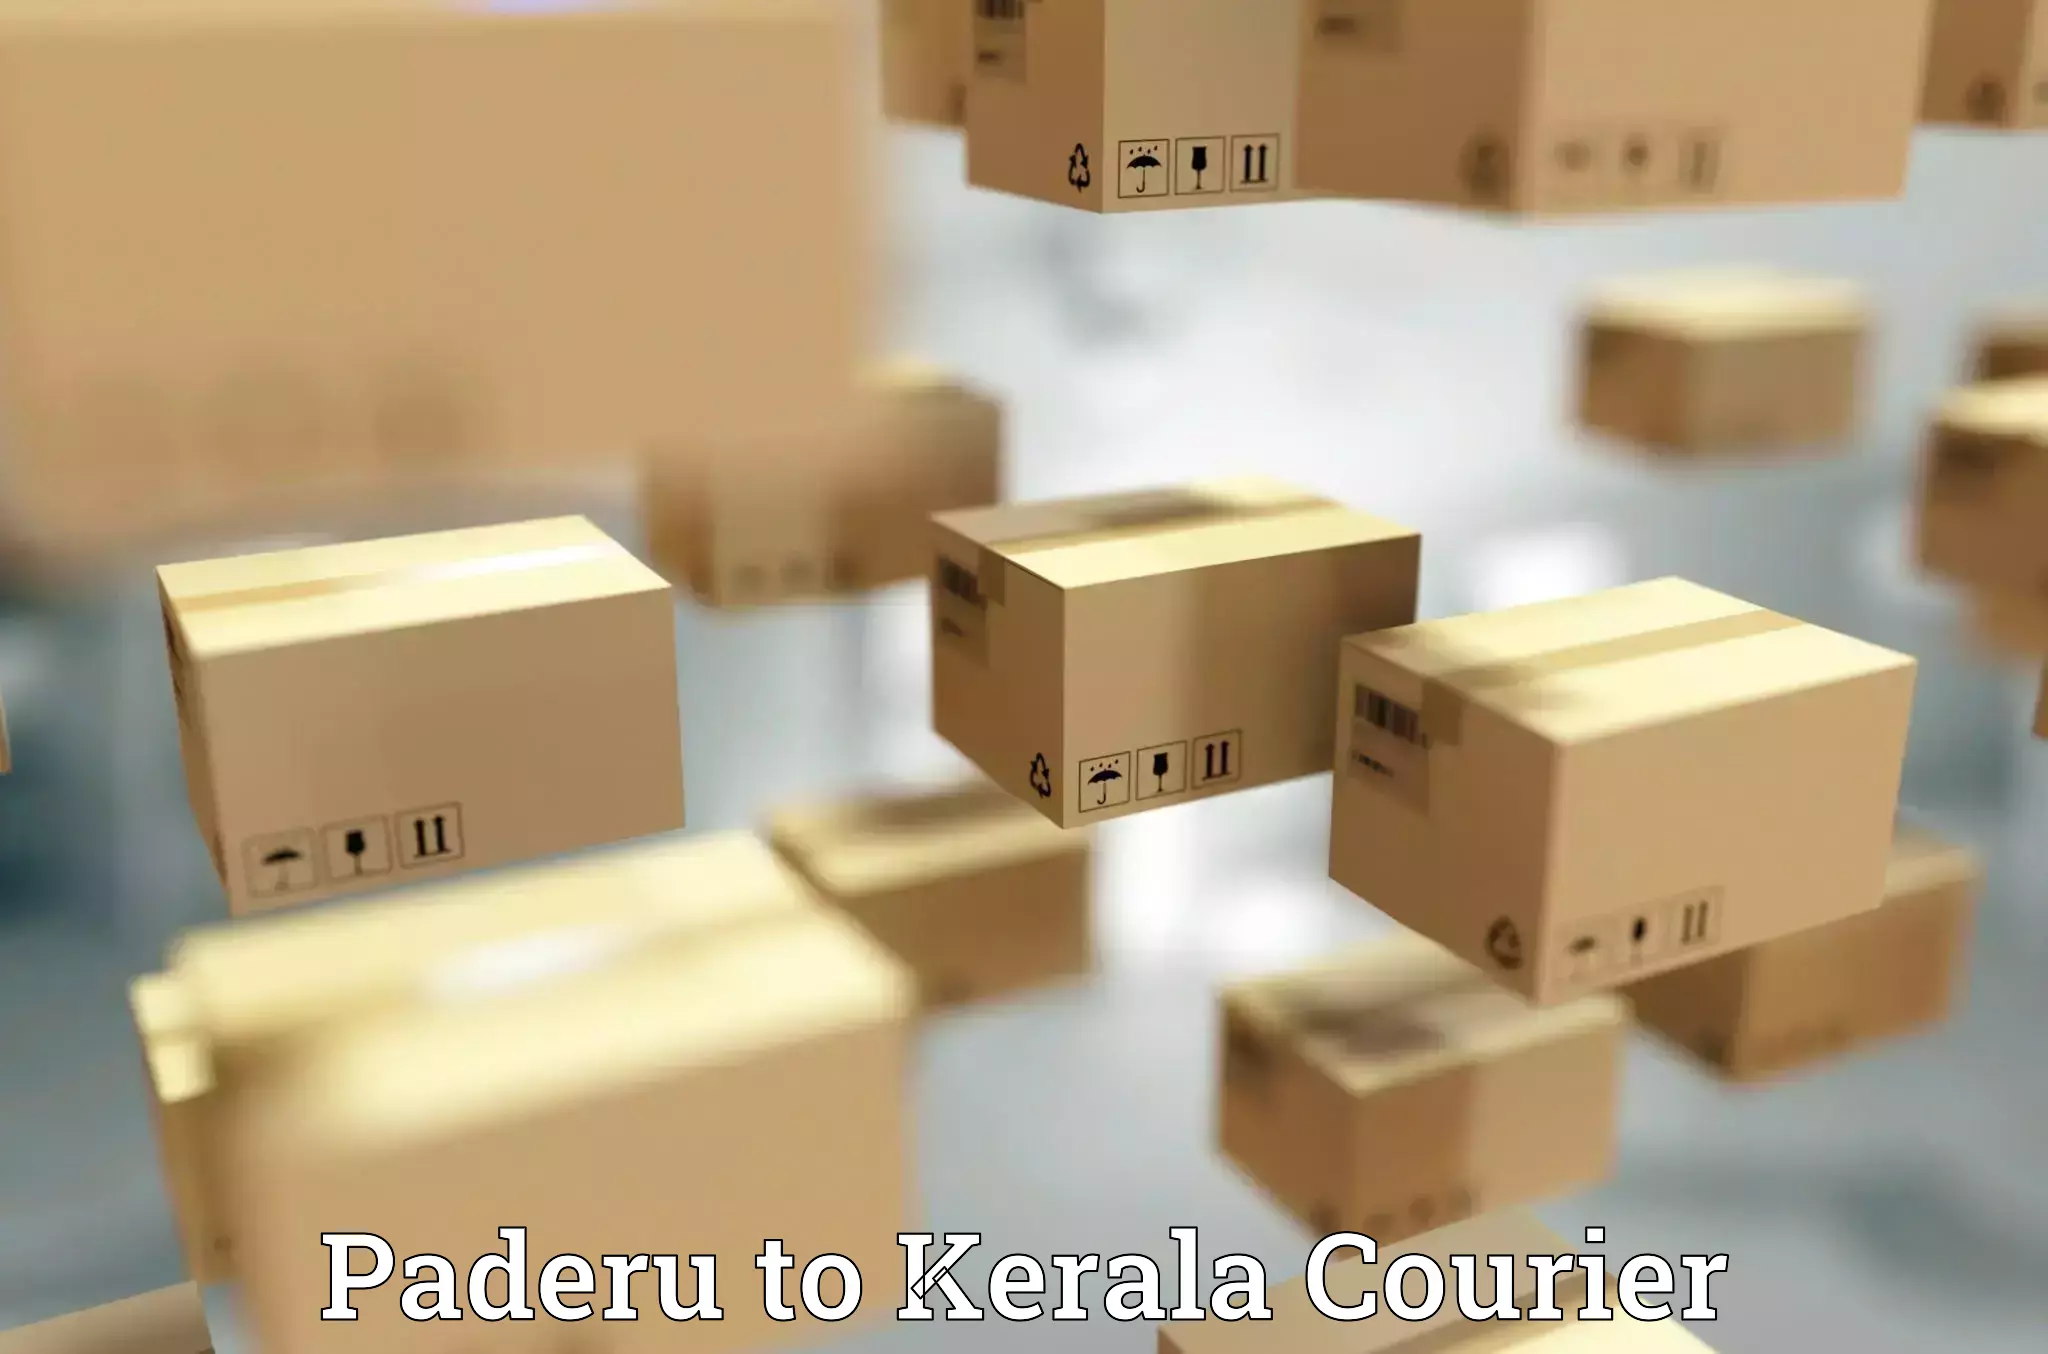 Large-scale shipping solutions Paderu to Muvattupuzha